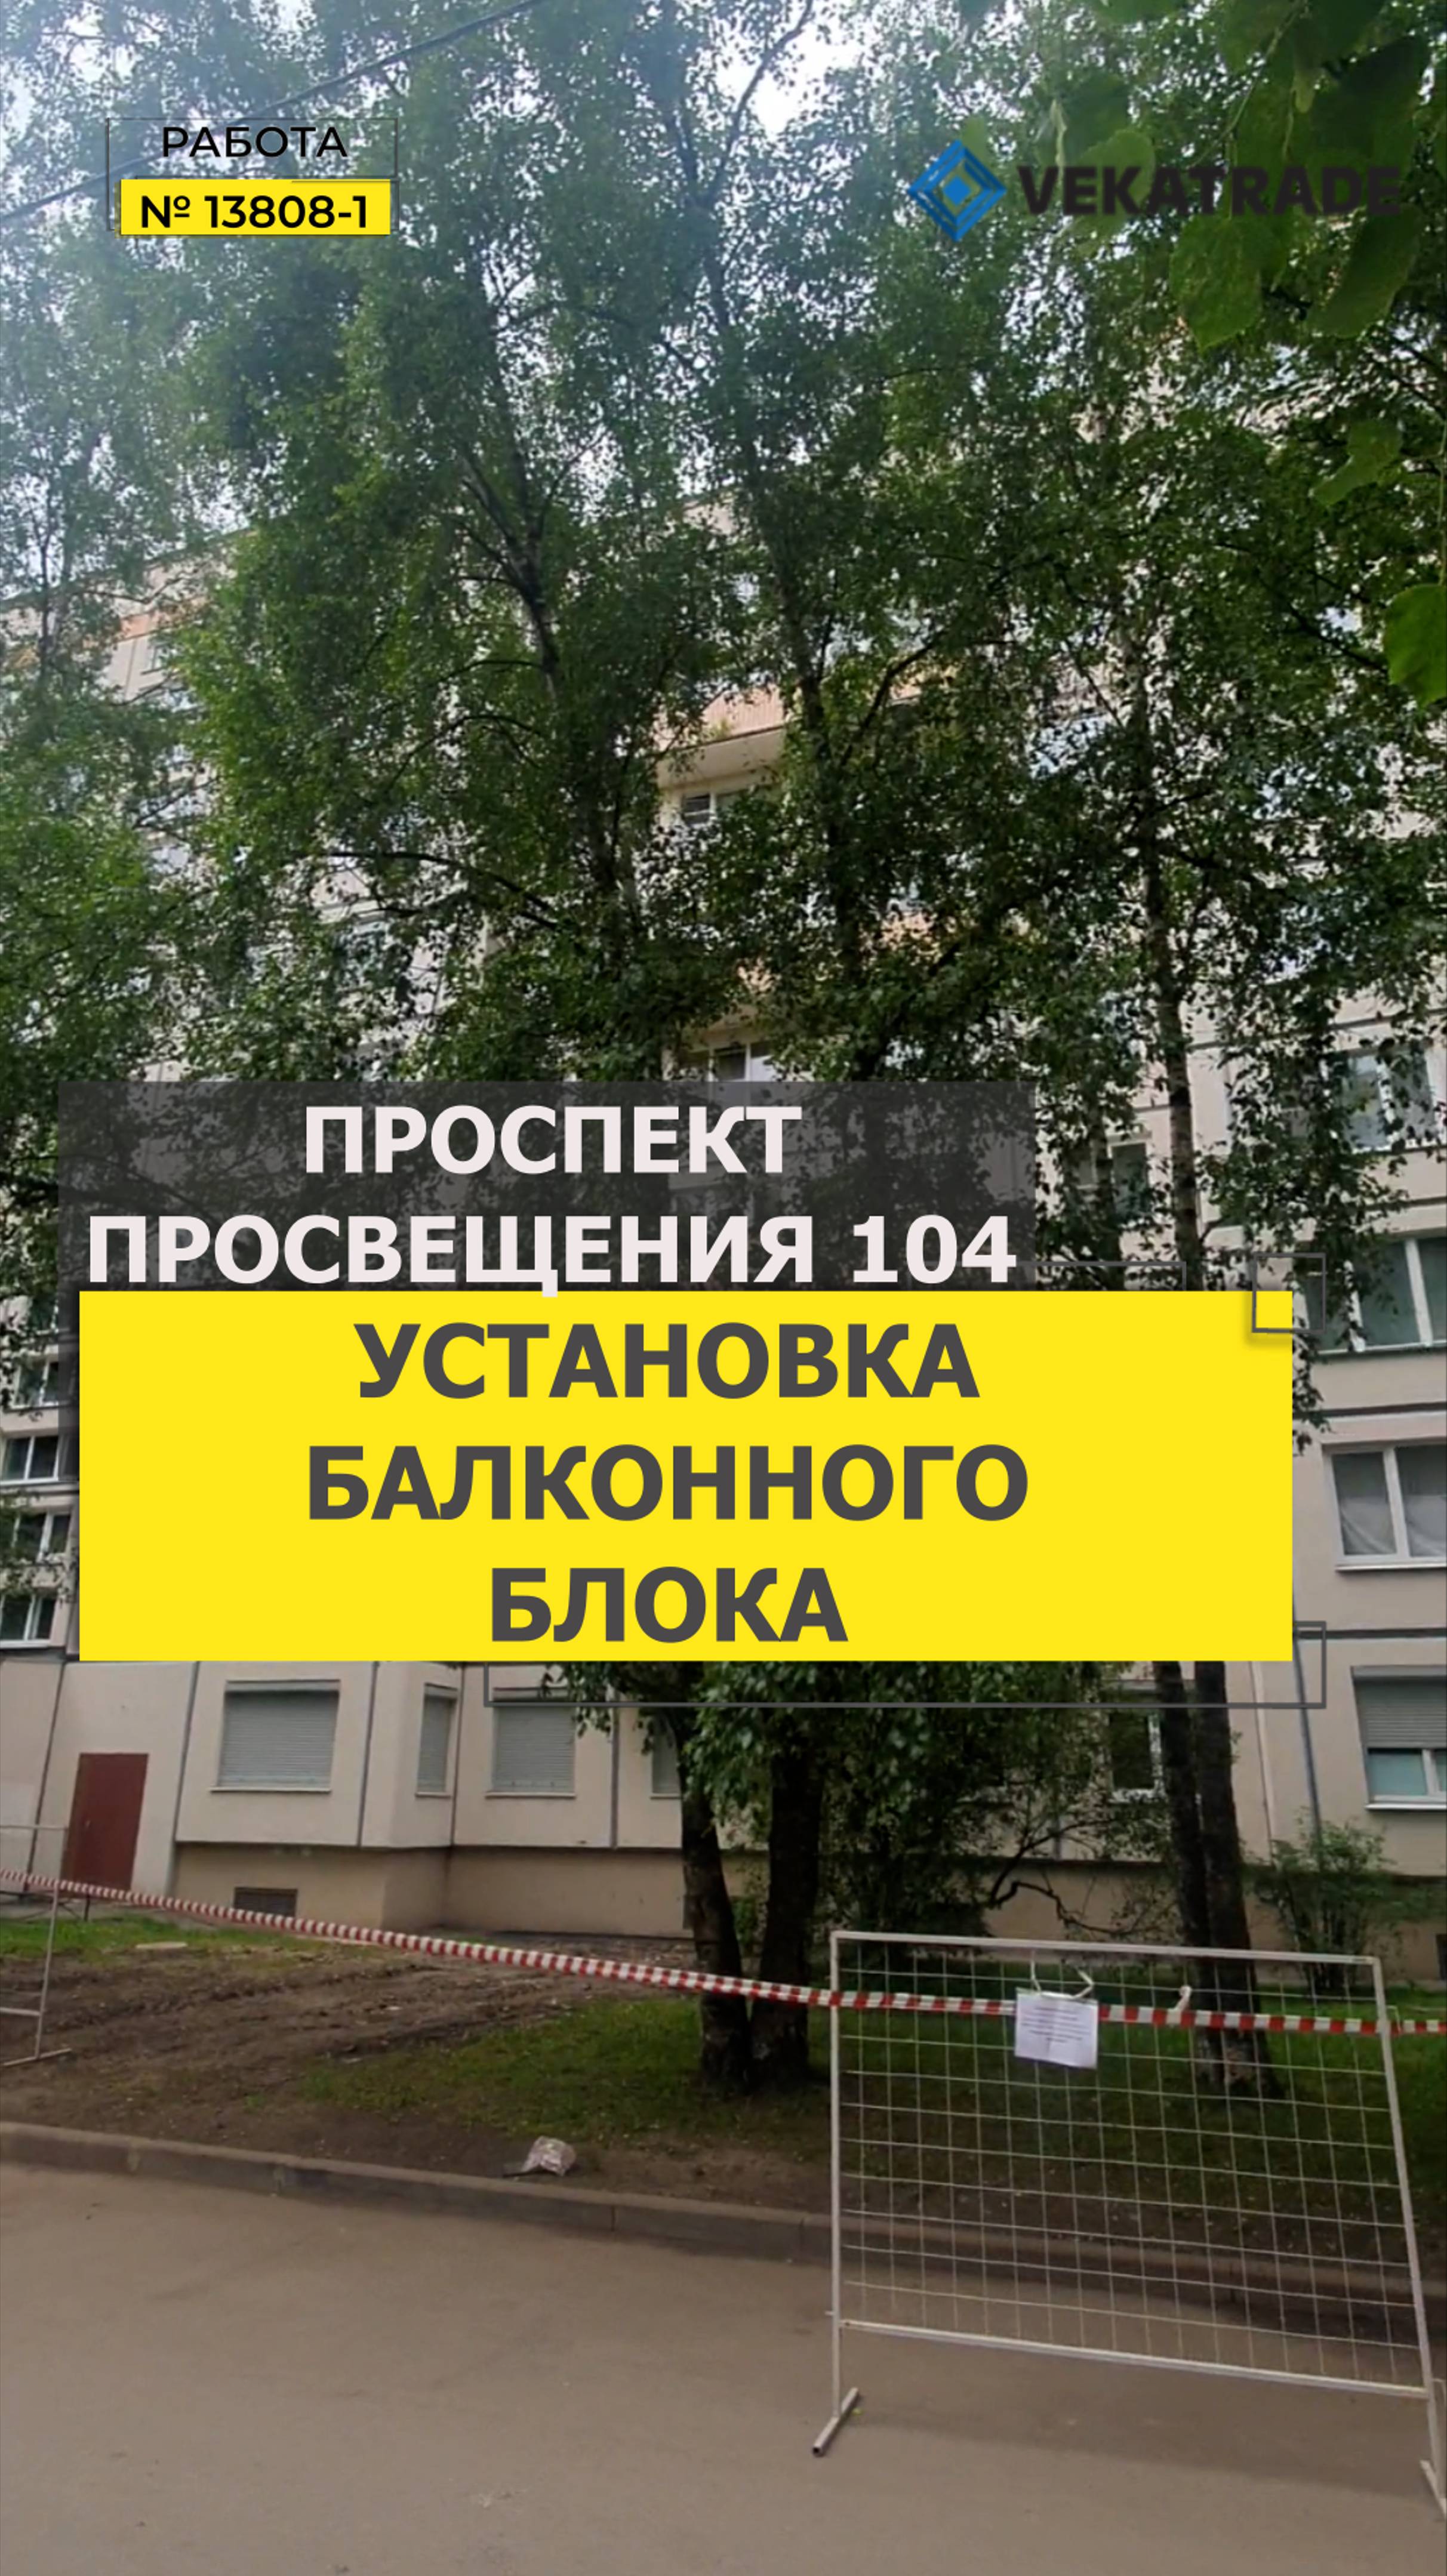 №13808 - 1 Проспект Просвещения 104 Замена балконного блока 1ЛГ-606-7А